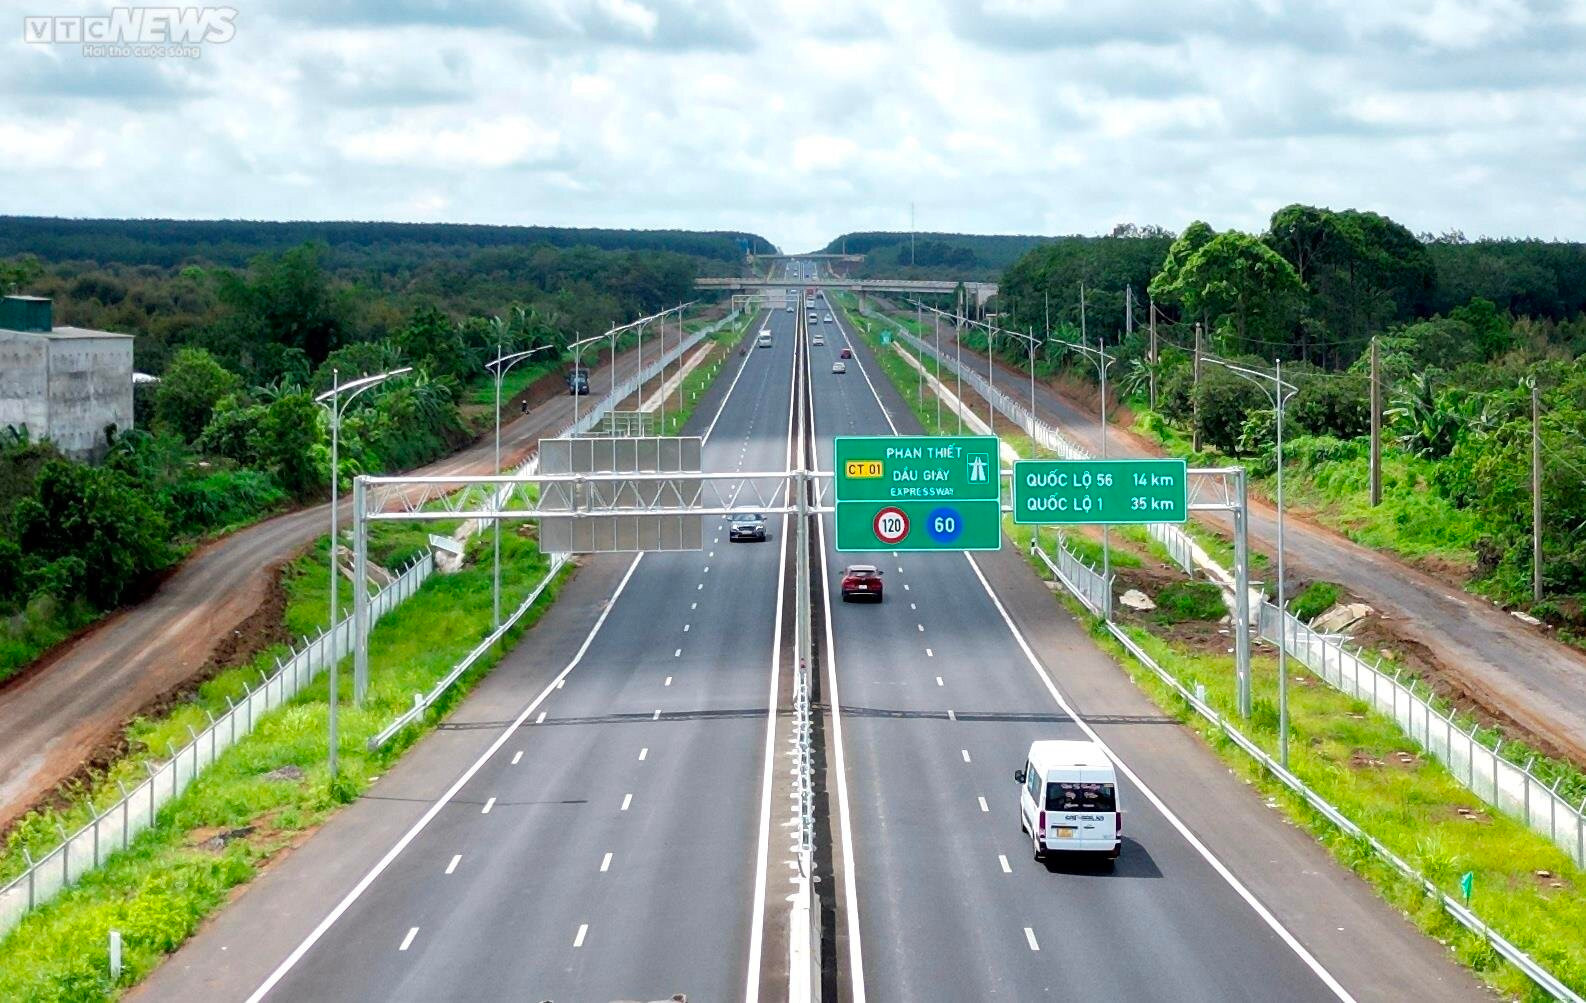 Cao tốc Dầu Giây - Phan Thiết được thiết kế chiều rộng mặt đường hơn 32m, quy mô 6 làn xe, vận tốc tối đa 120km/h - tối thiểu 60 km/h. (Ảnh: Thy Huệ).